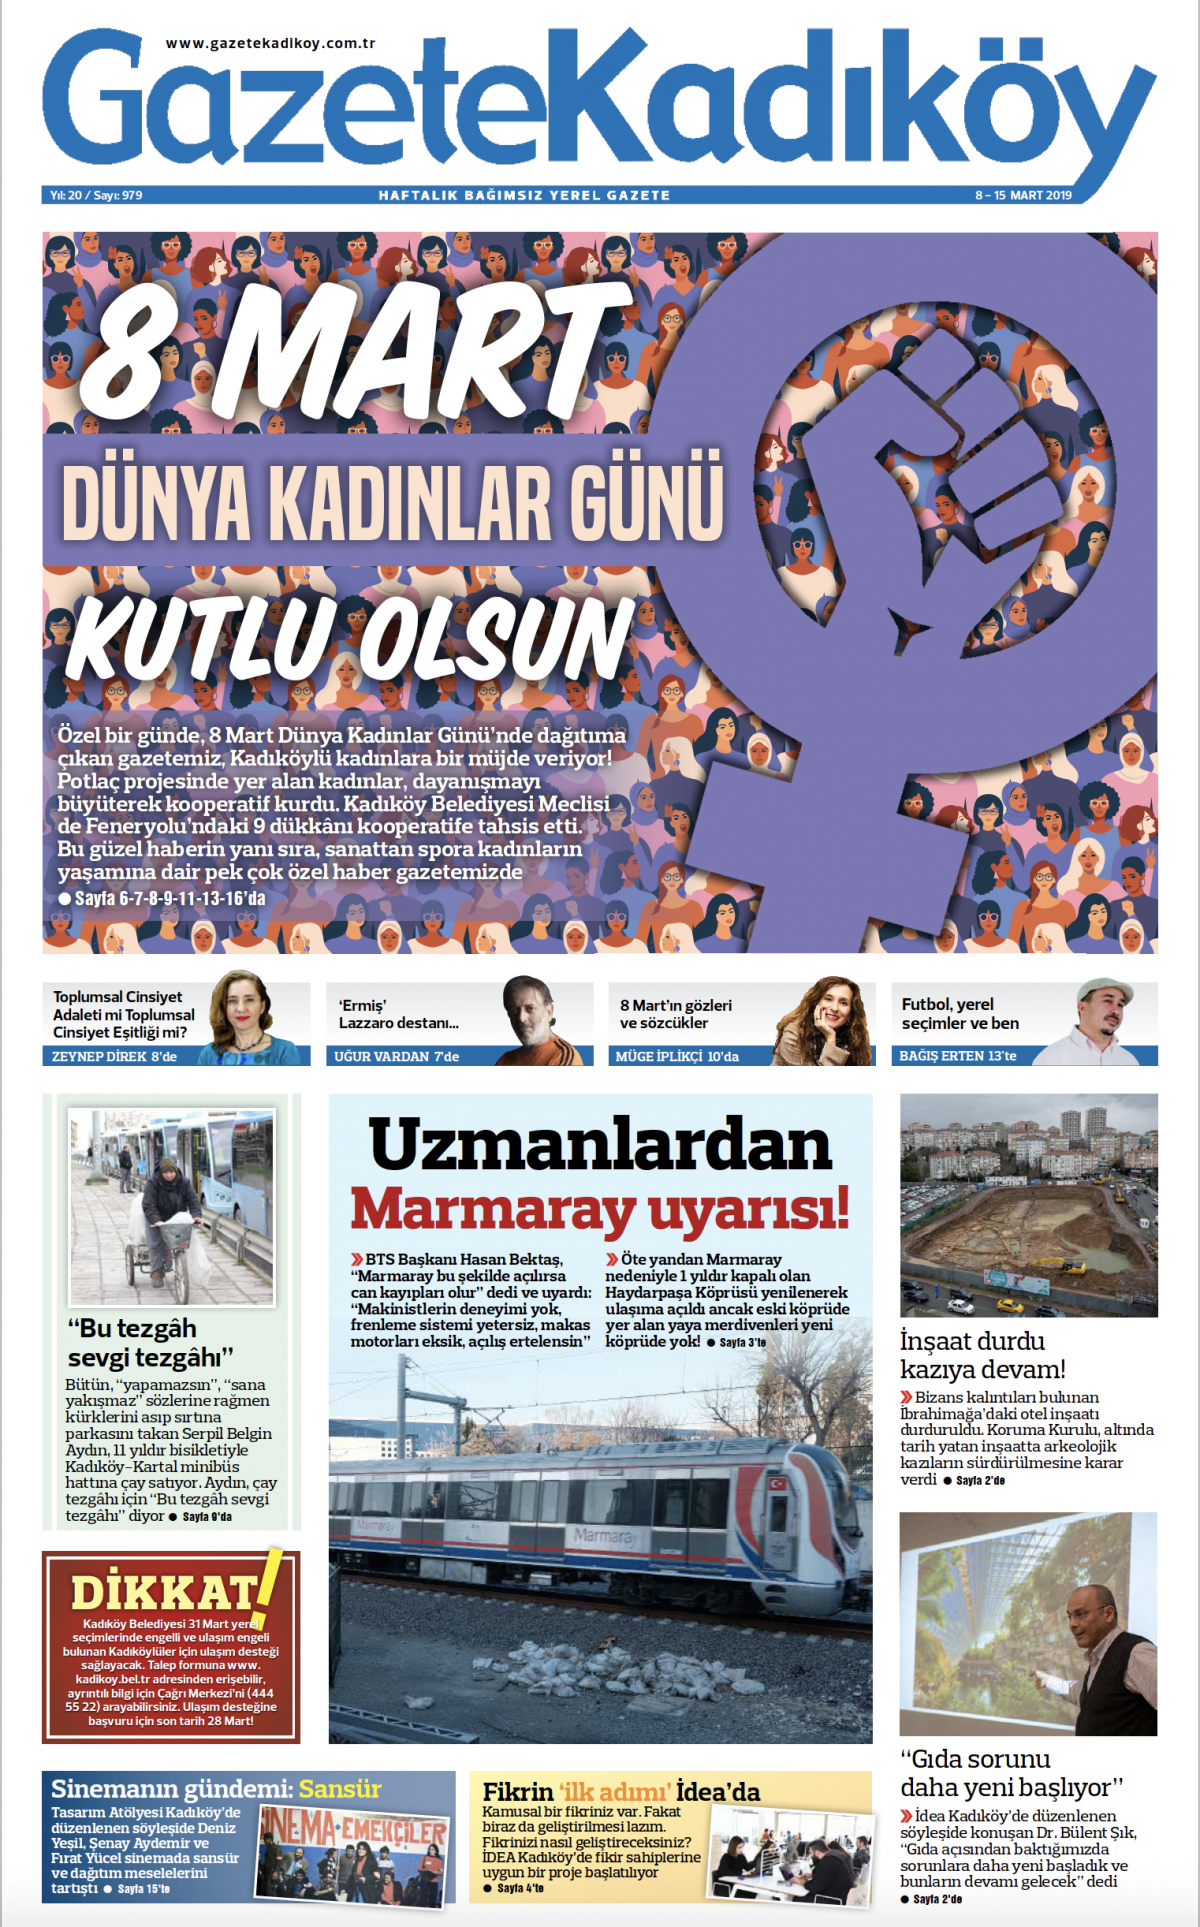 Gazete Kadıköy - 979. sayı- 08. 03.2019